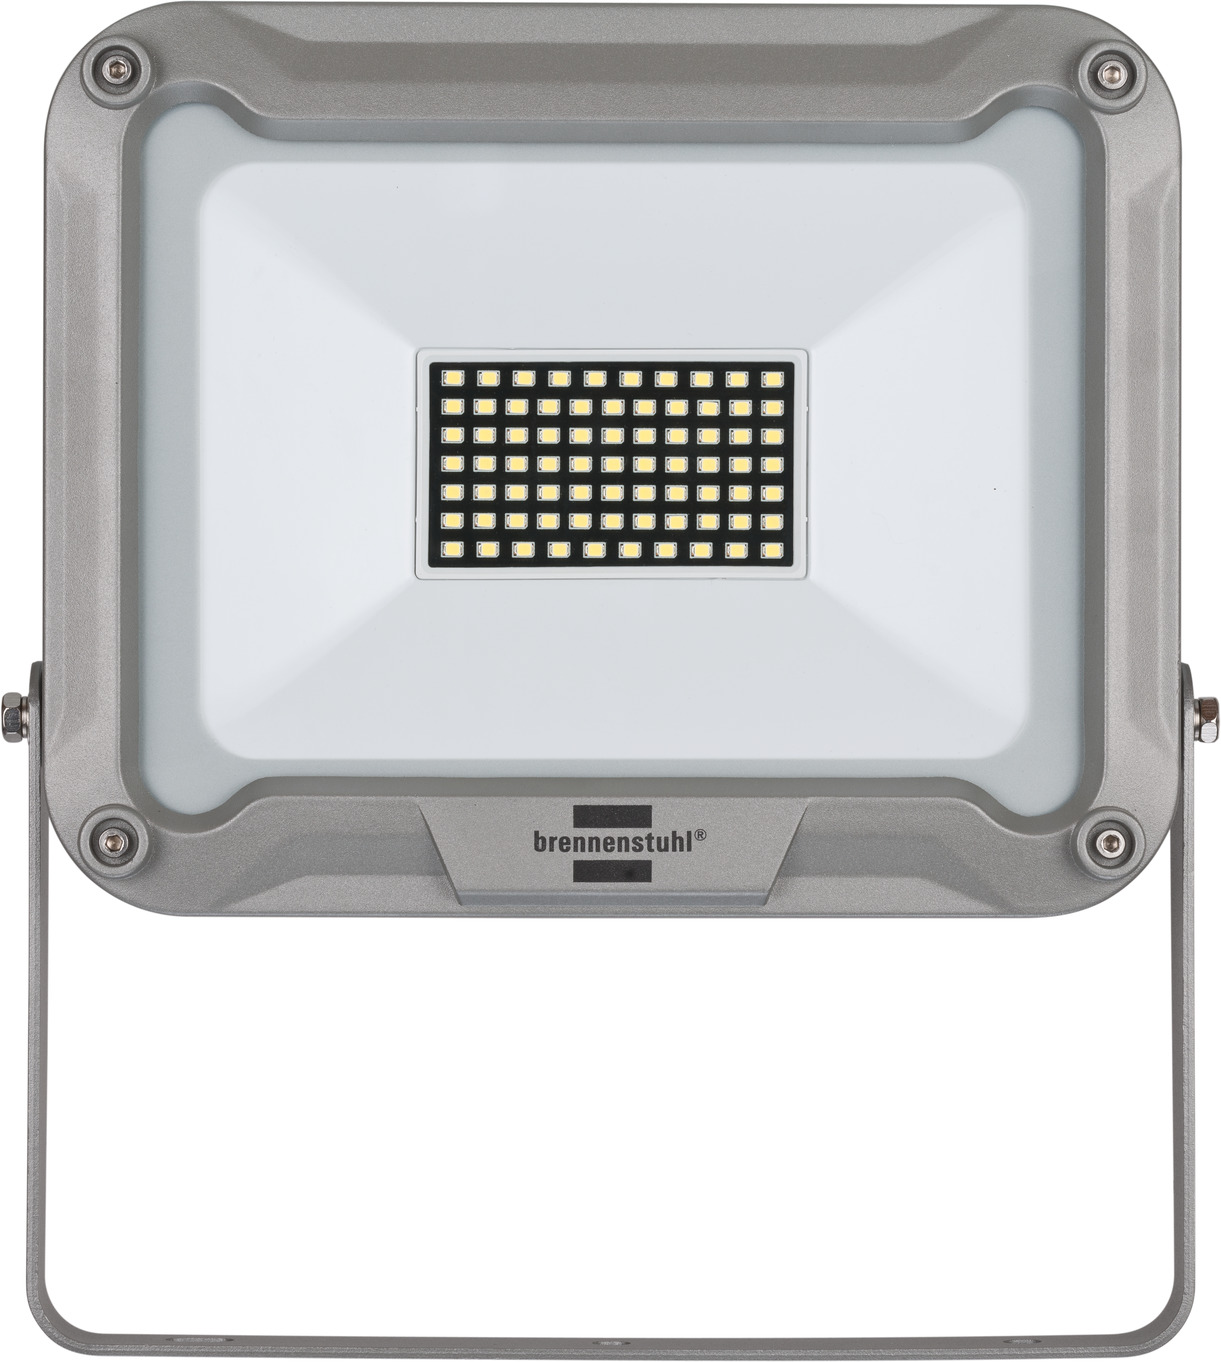 LED Strahler JARO 5050 4400lm, 50W, IP65 | brennenstuhl®